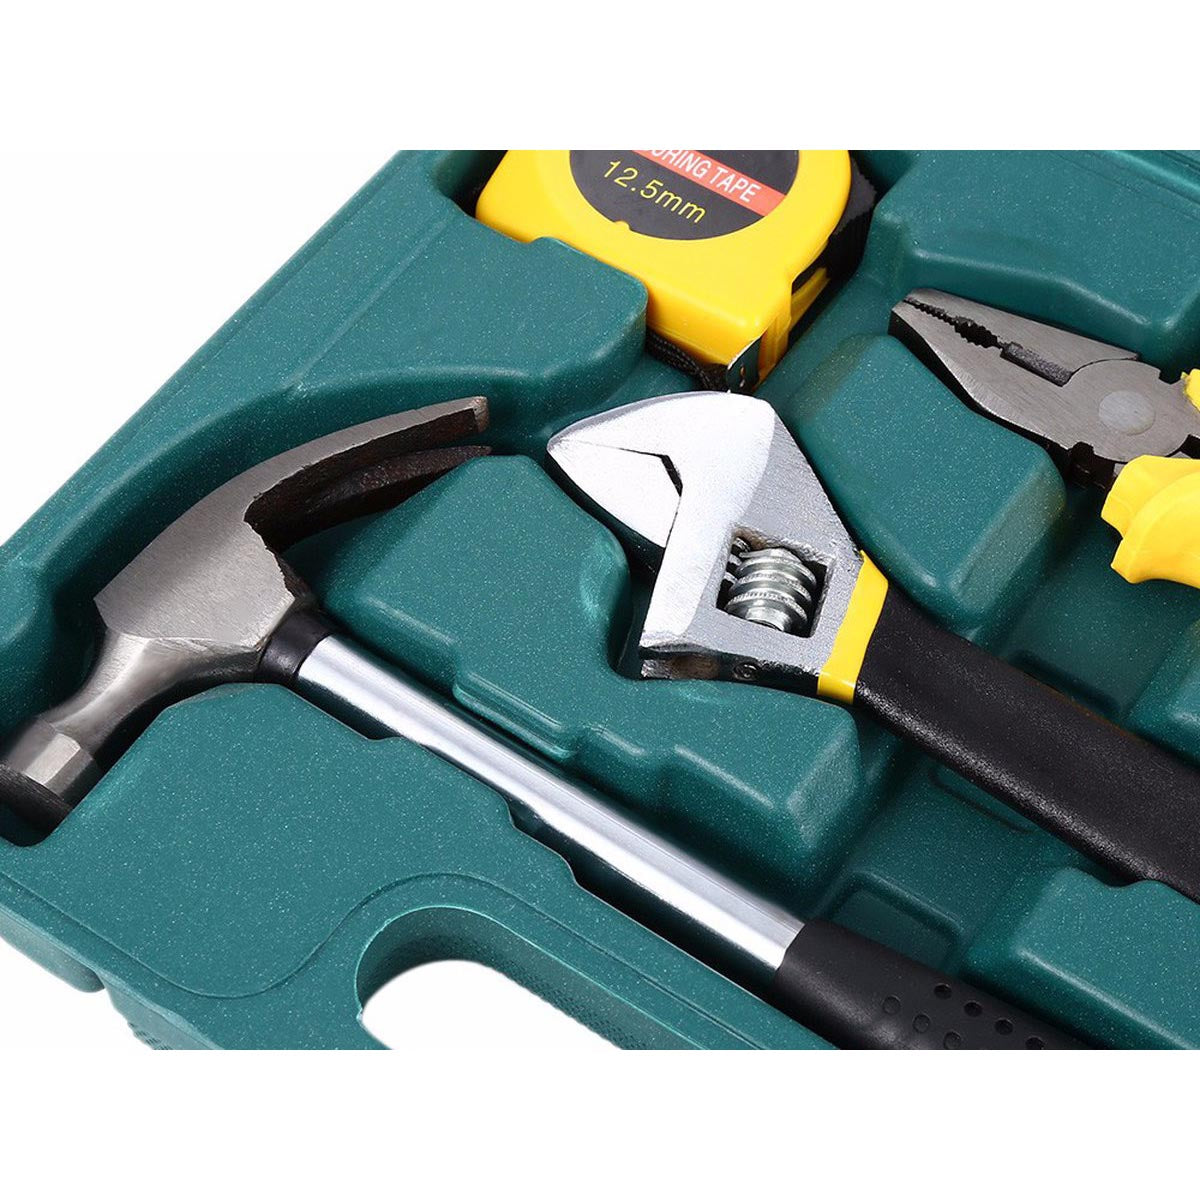 <tc>Ariko</tc> Tool set case - DIY - Tool case - Tool set - 16 Pieces